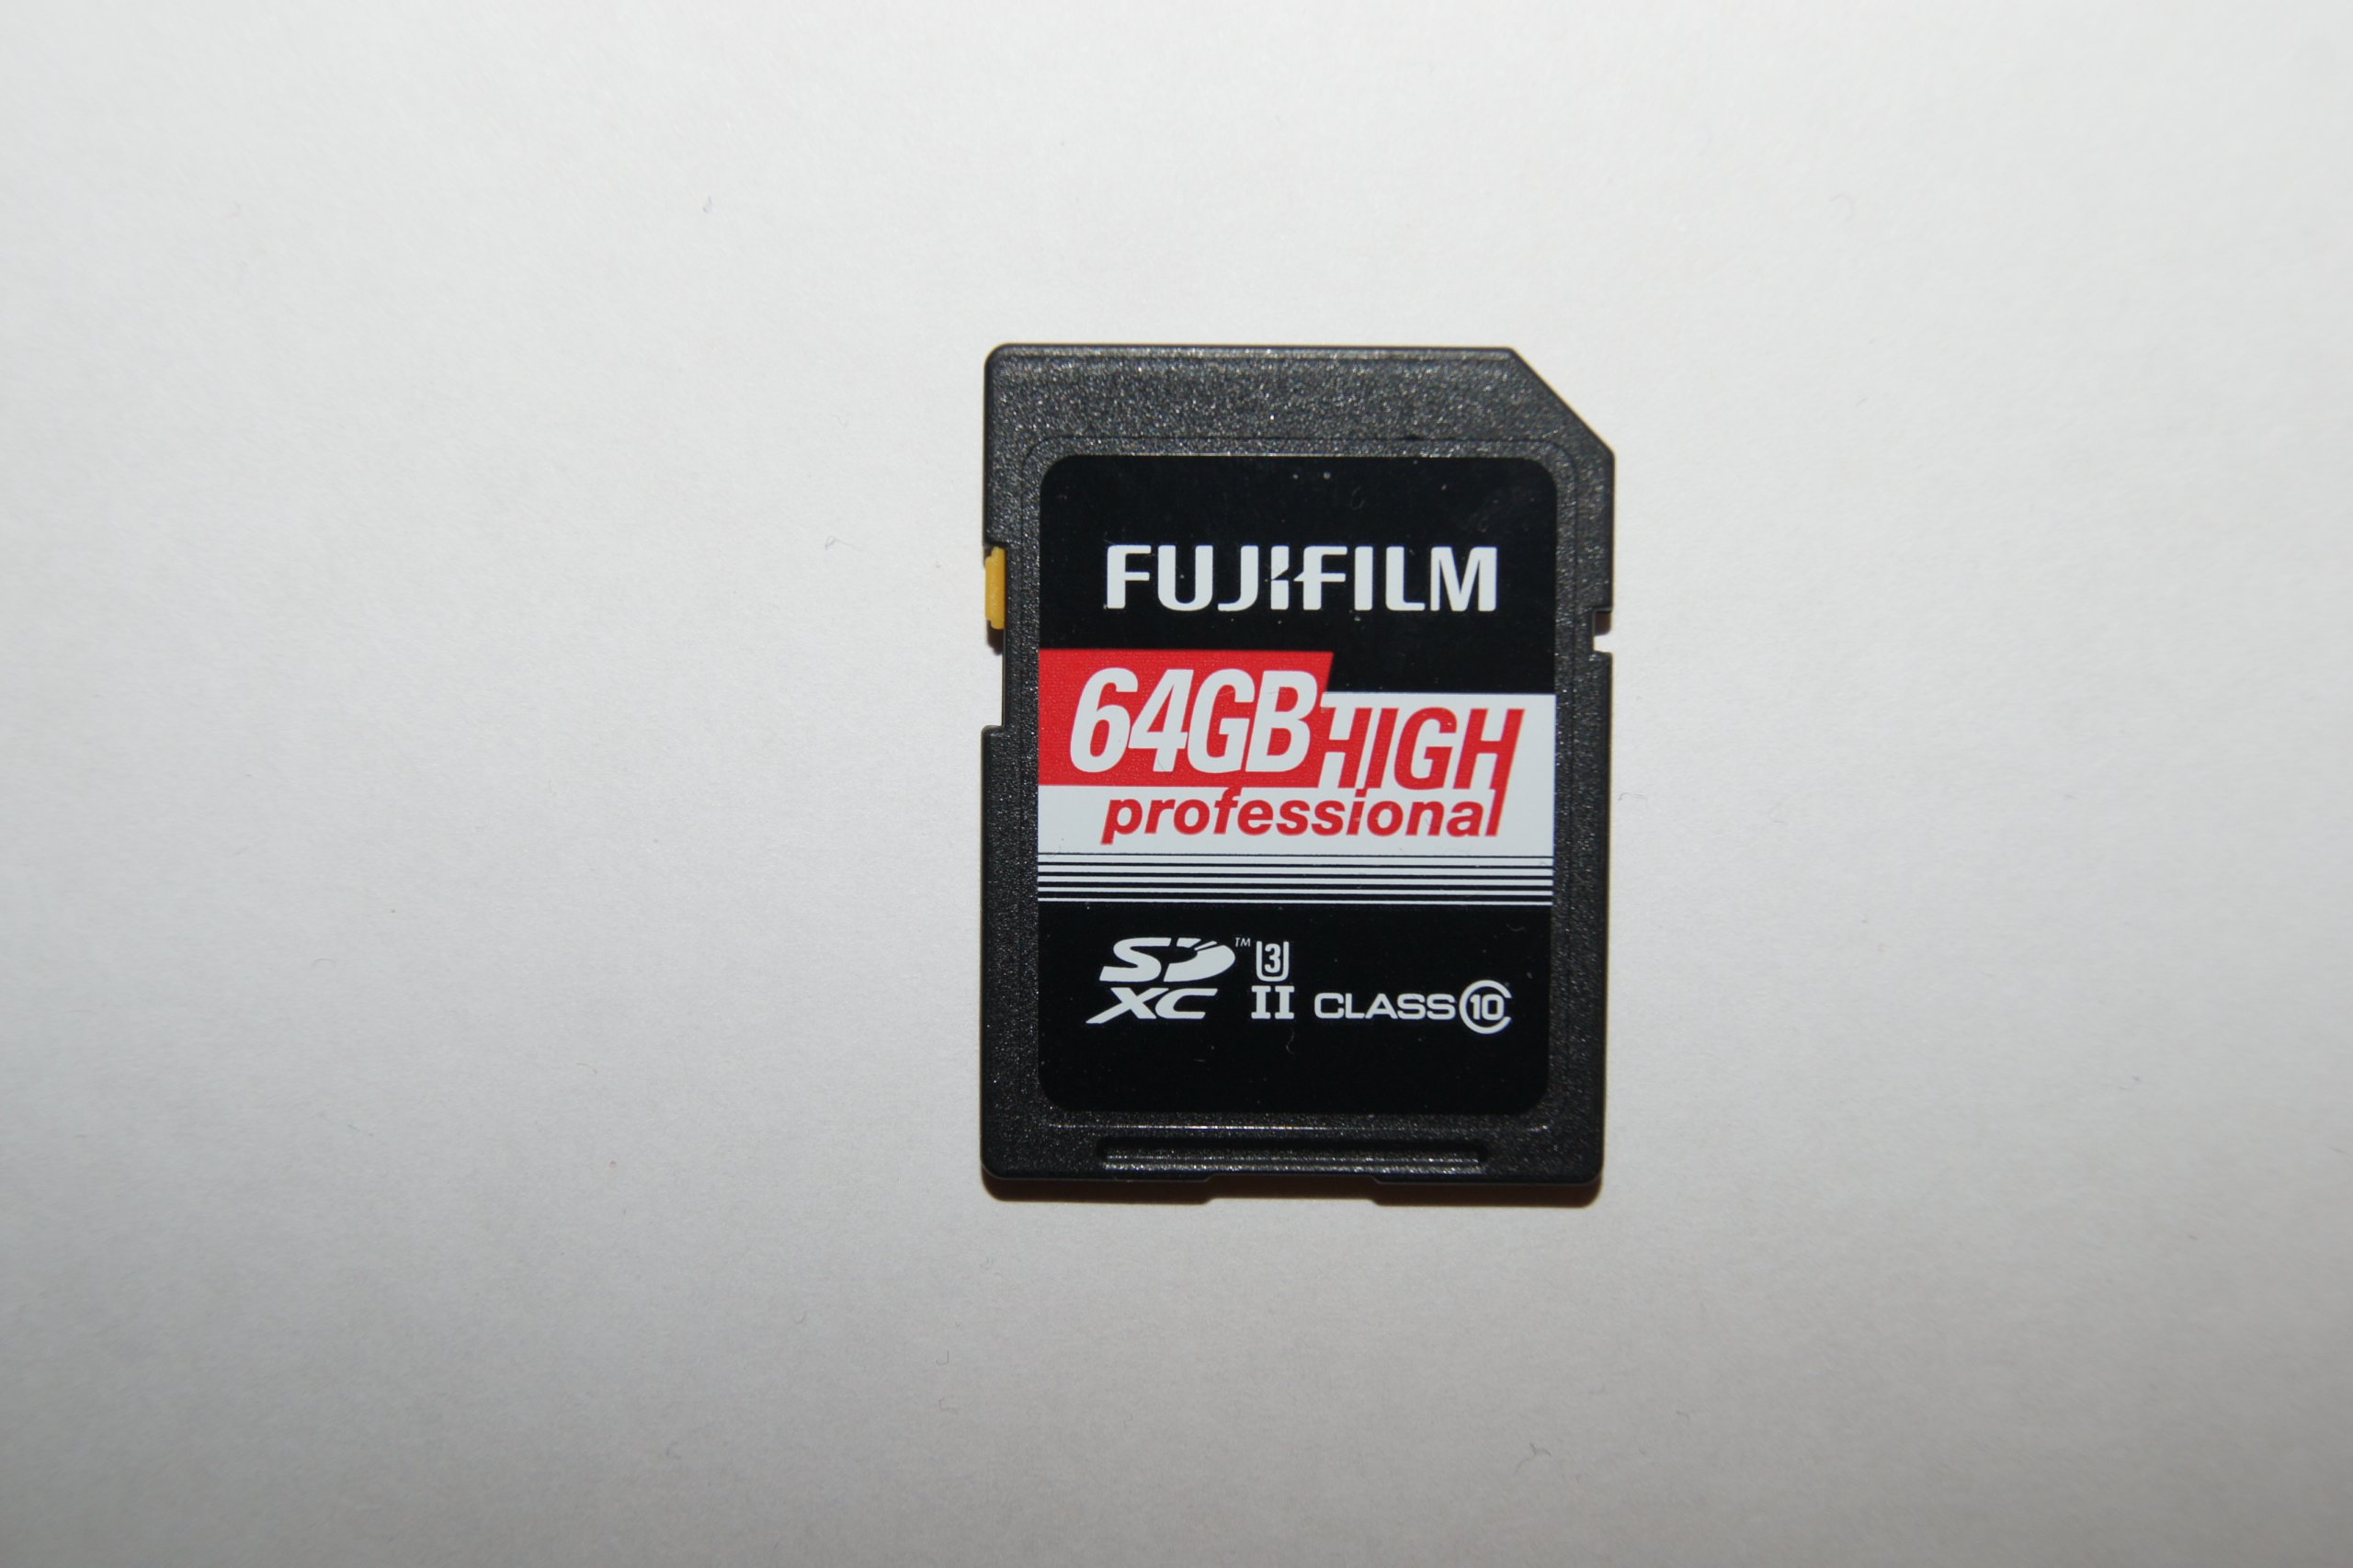 Fujifilm SDXC-64GB High Professional C10 UHS-II schwarz 